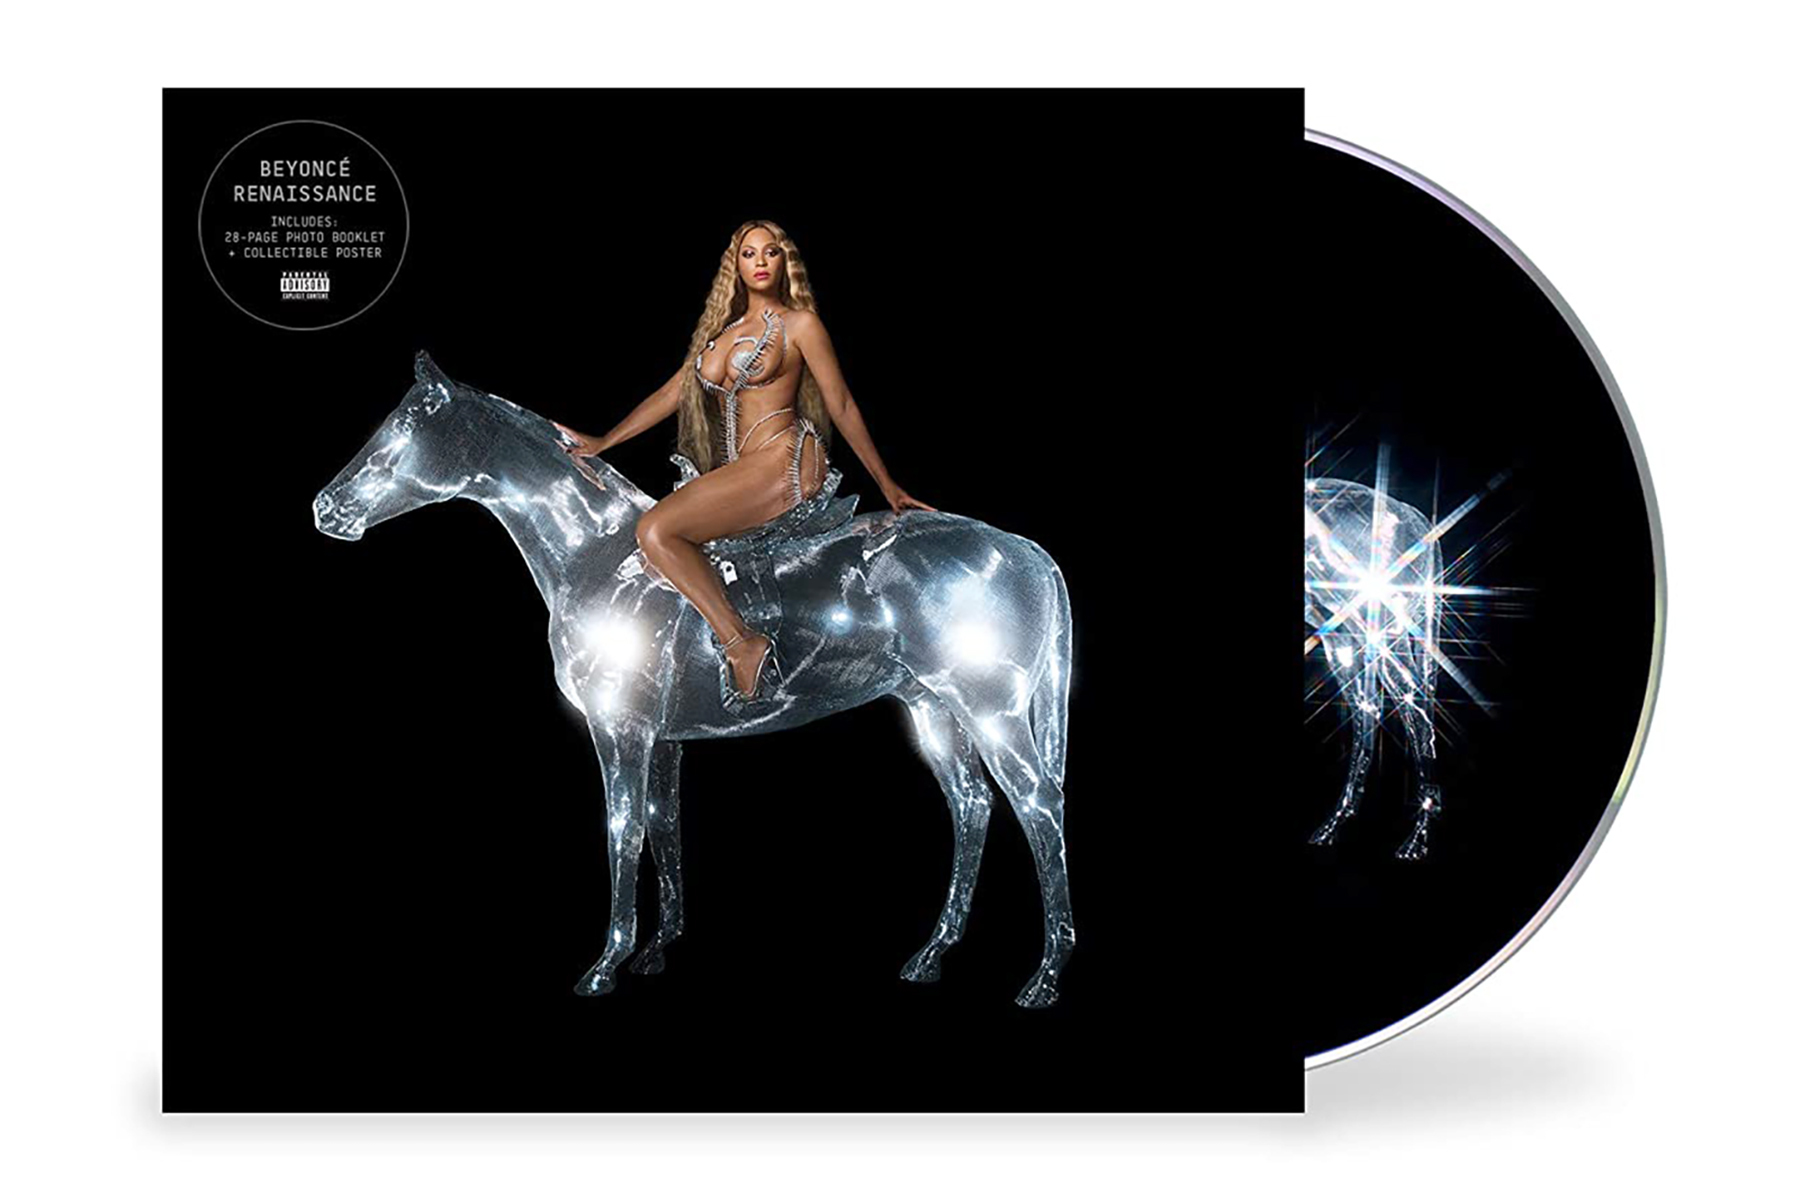 Das Cover des Albums "Renaissance" der Sängerin Beyonce